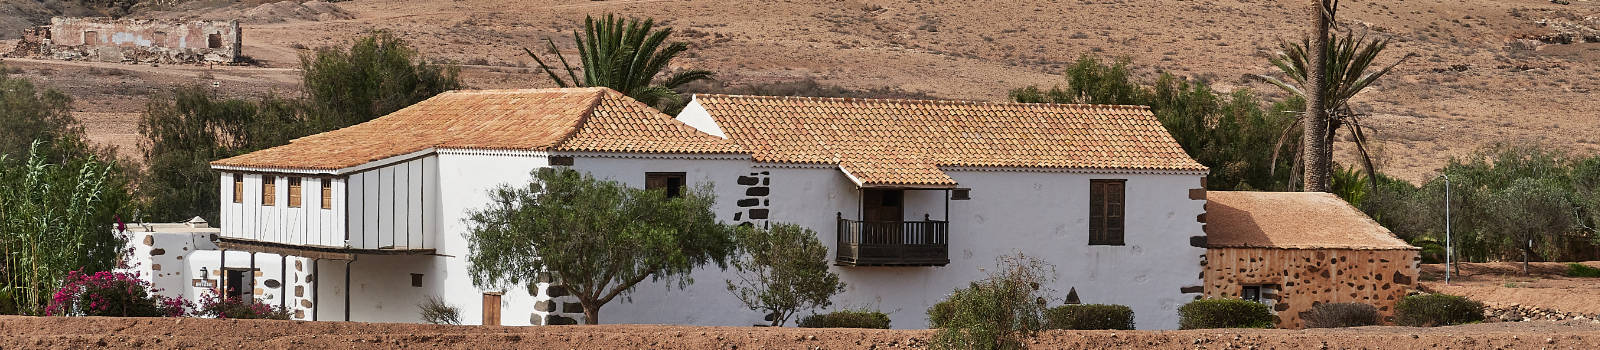 Casa de Rugama Casillas del Ángel Fuerteventura.